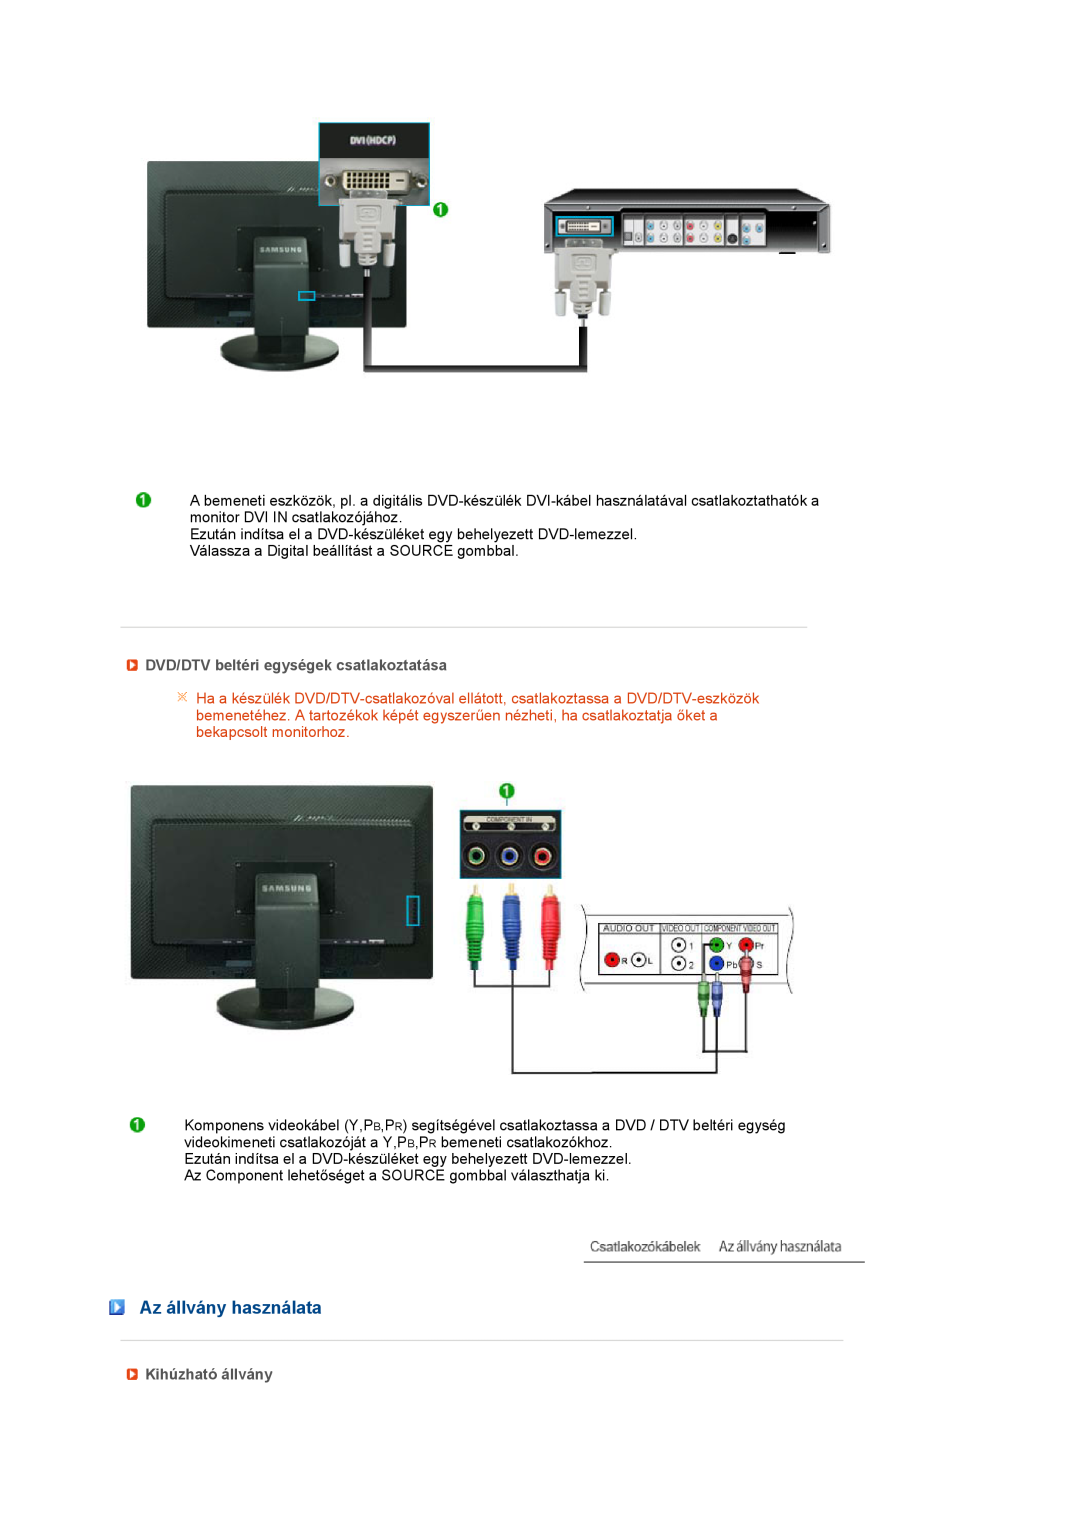 Samsung LS27HUBCB/EDC, LS27HUBCBS/EDC Az állvány használata, DVD/DTV beltéri egységek csatlakoztatása, Kihúzható állvány 